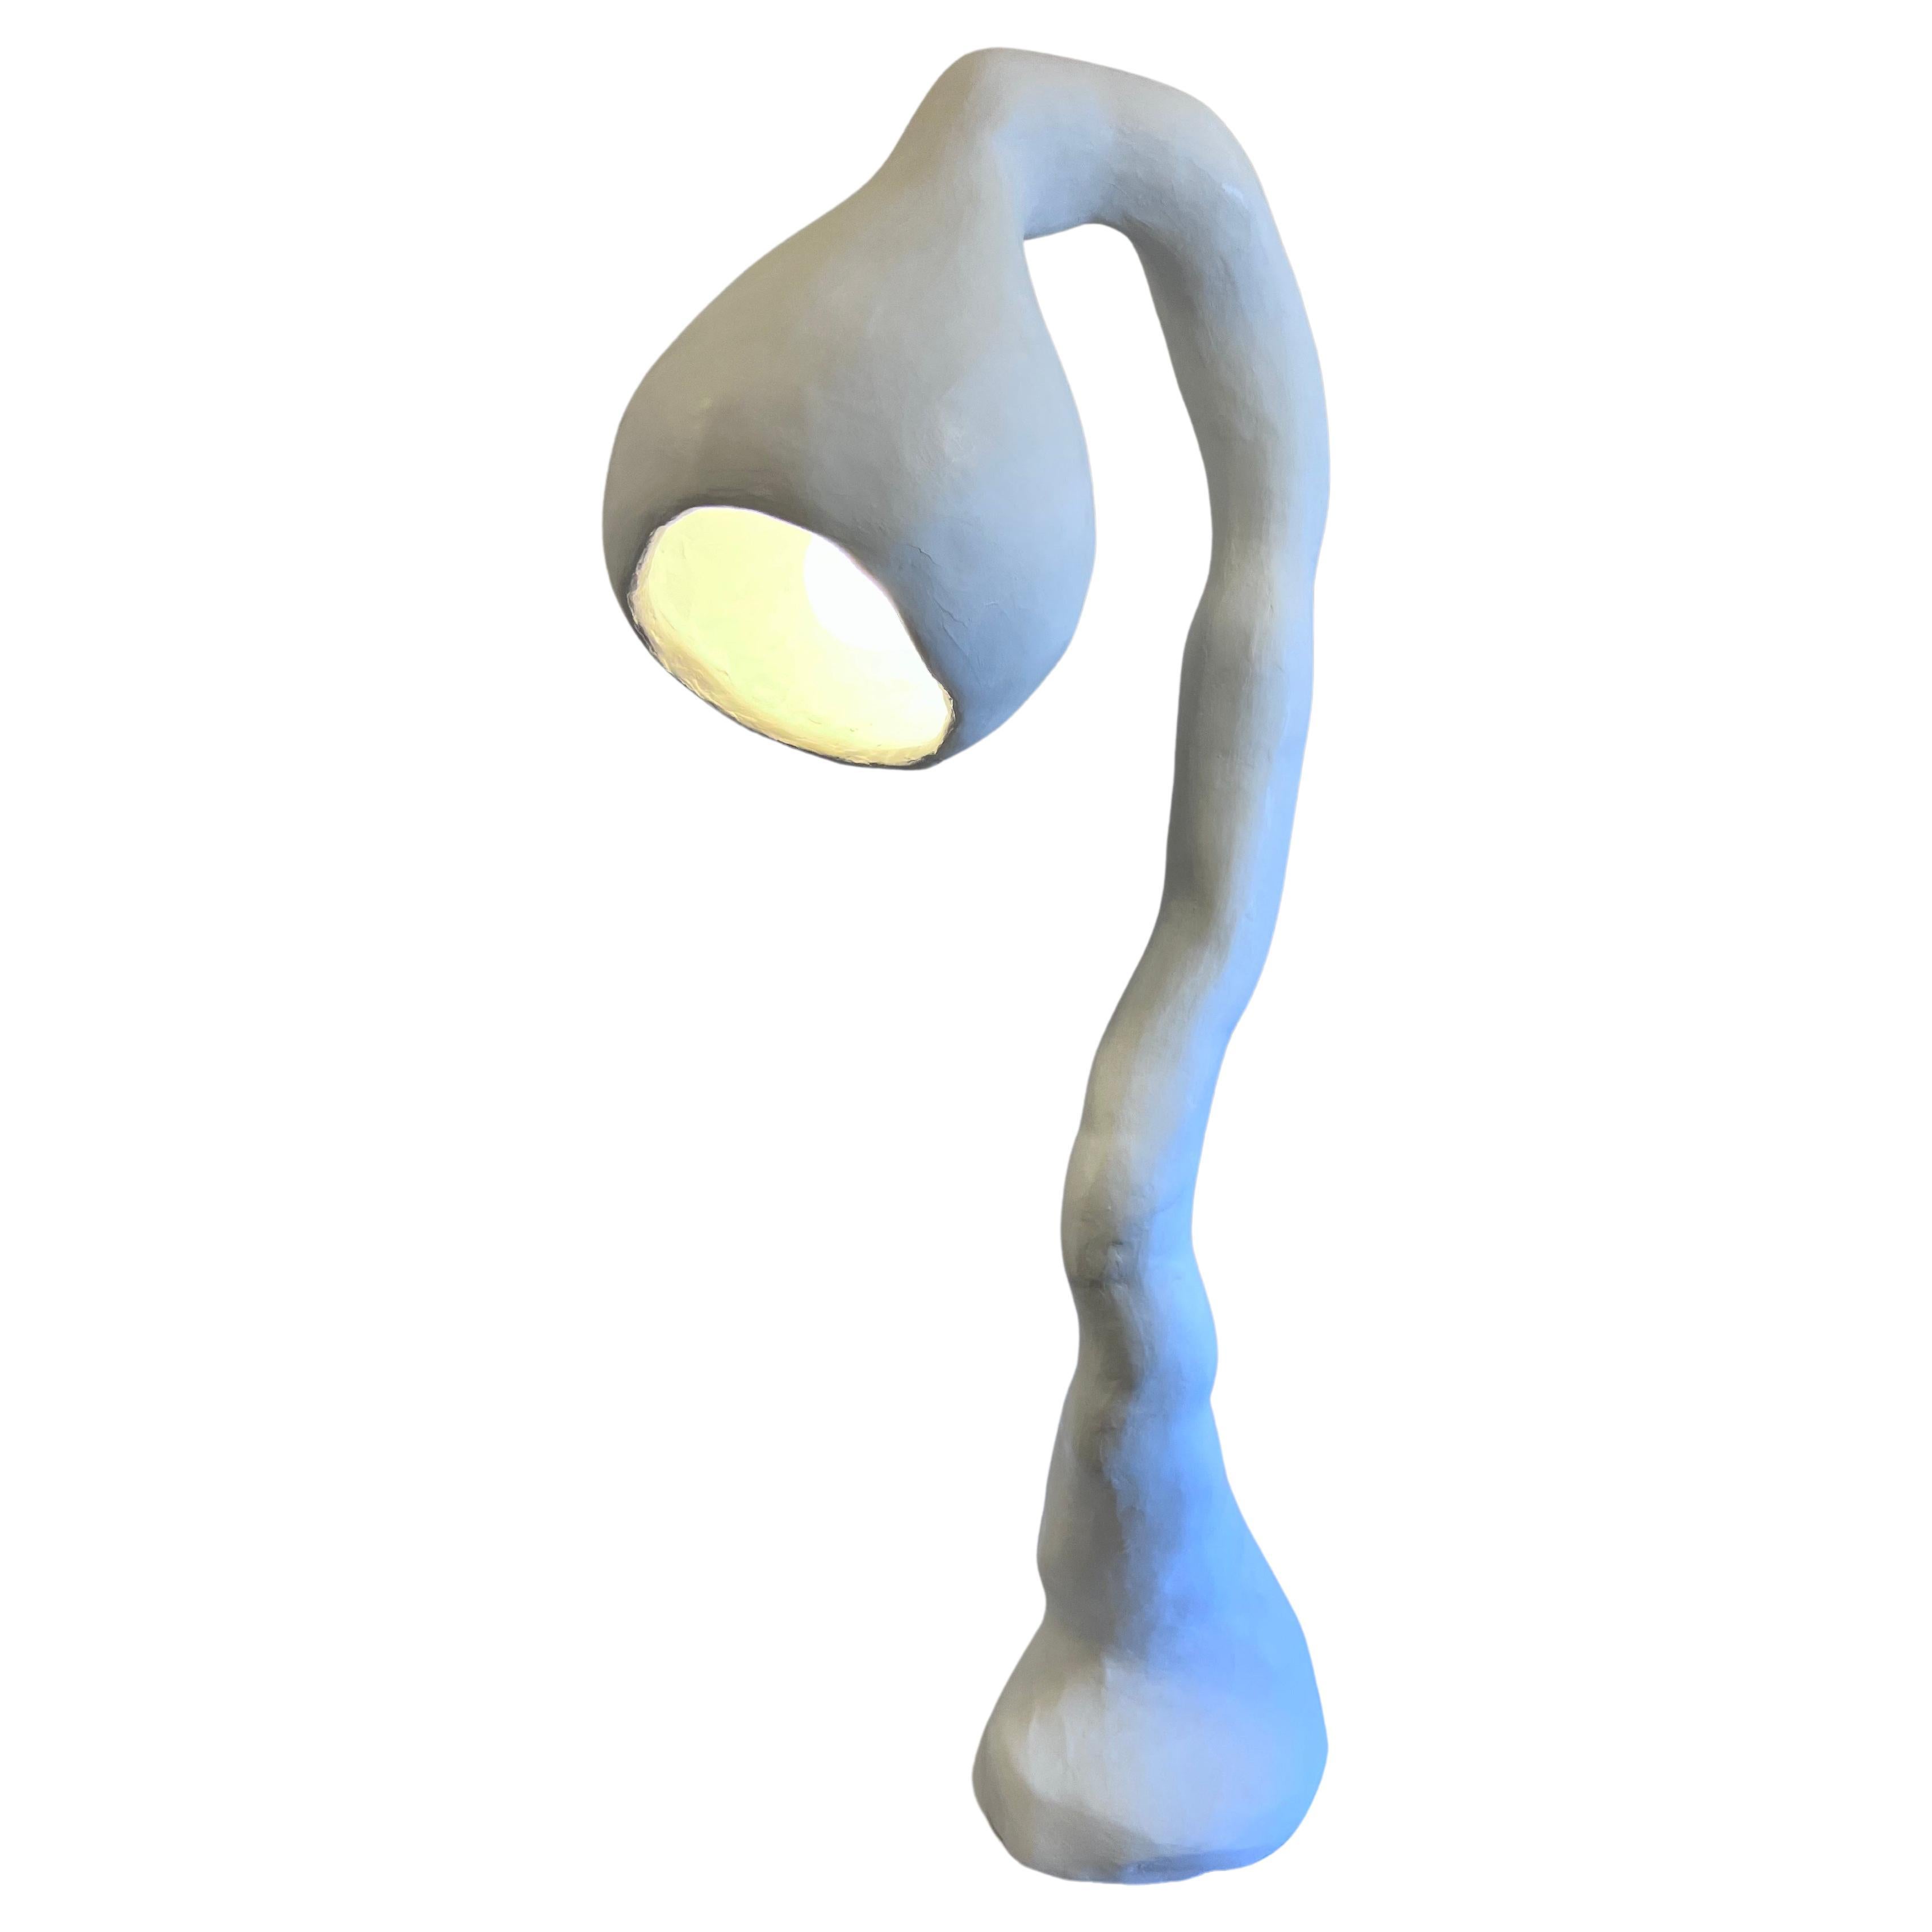 Biomorphe Stehlampe N.4 von Studio Chora, Stehleuchte, weißer Stein, auf Lager im Angebot